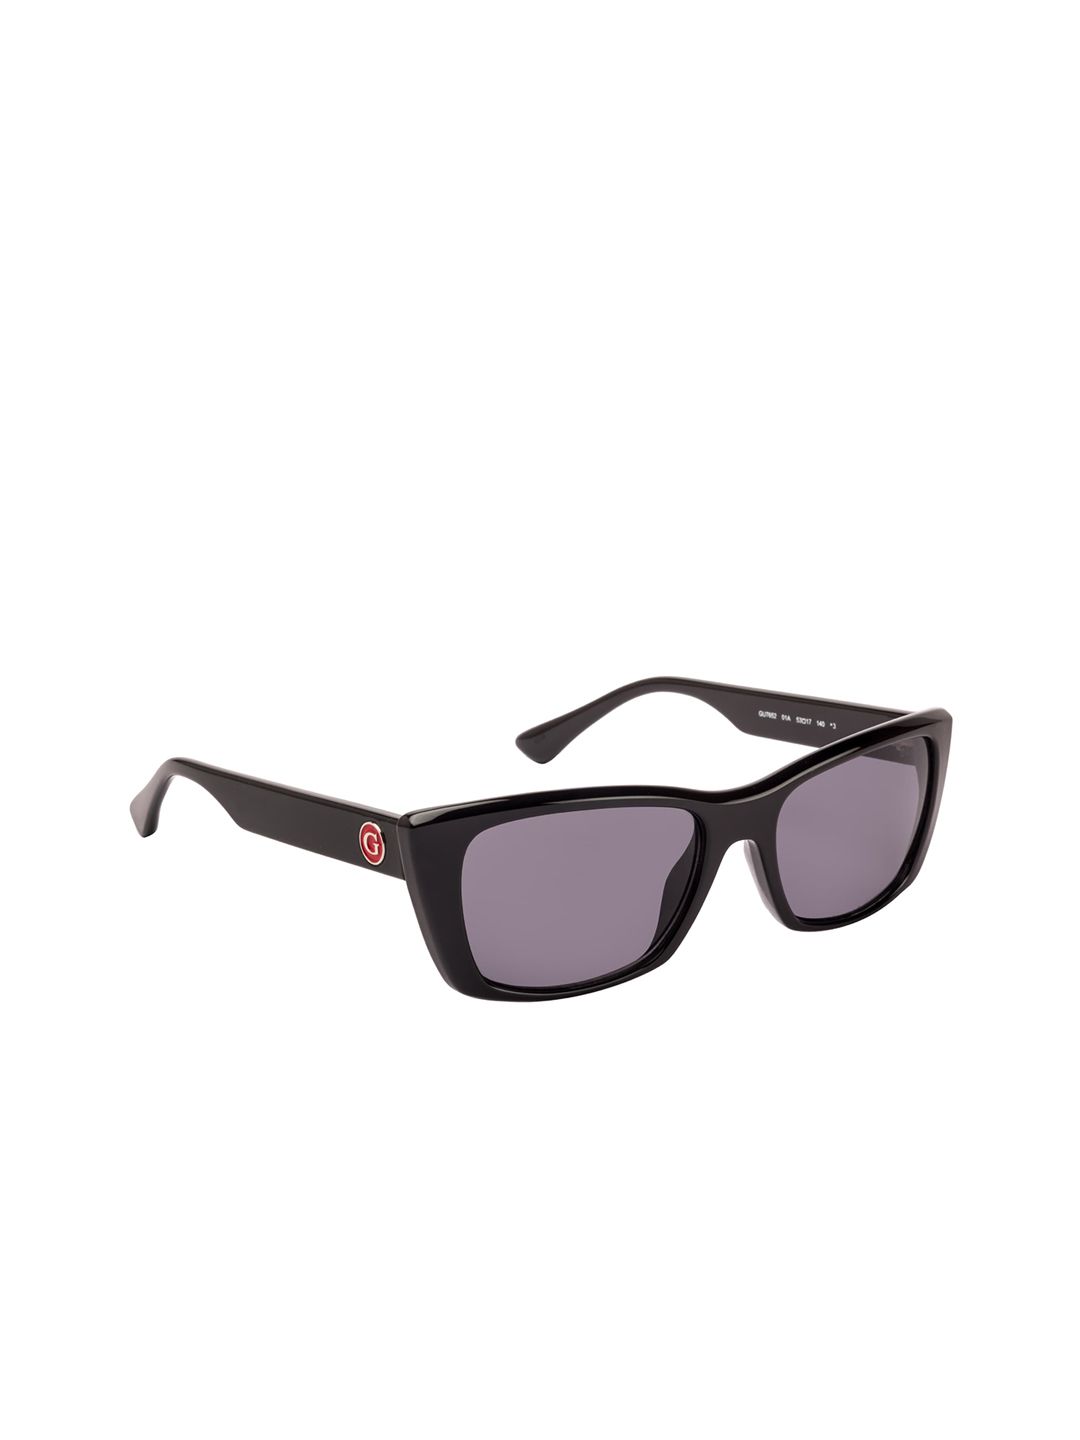 GUESS Women Square Sunglasses GU7652 53 01A Price in India